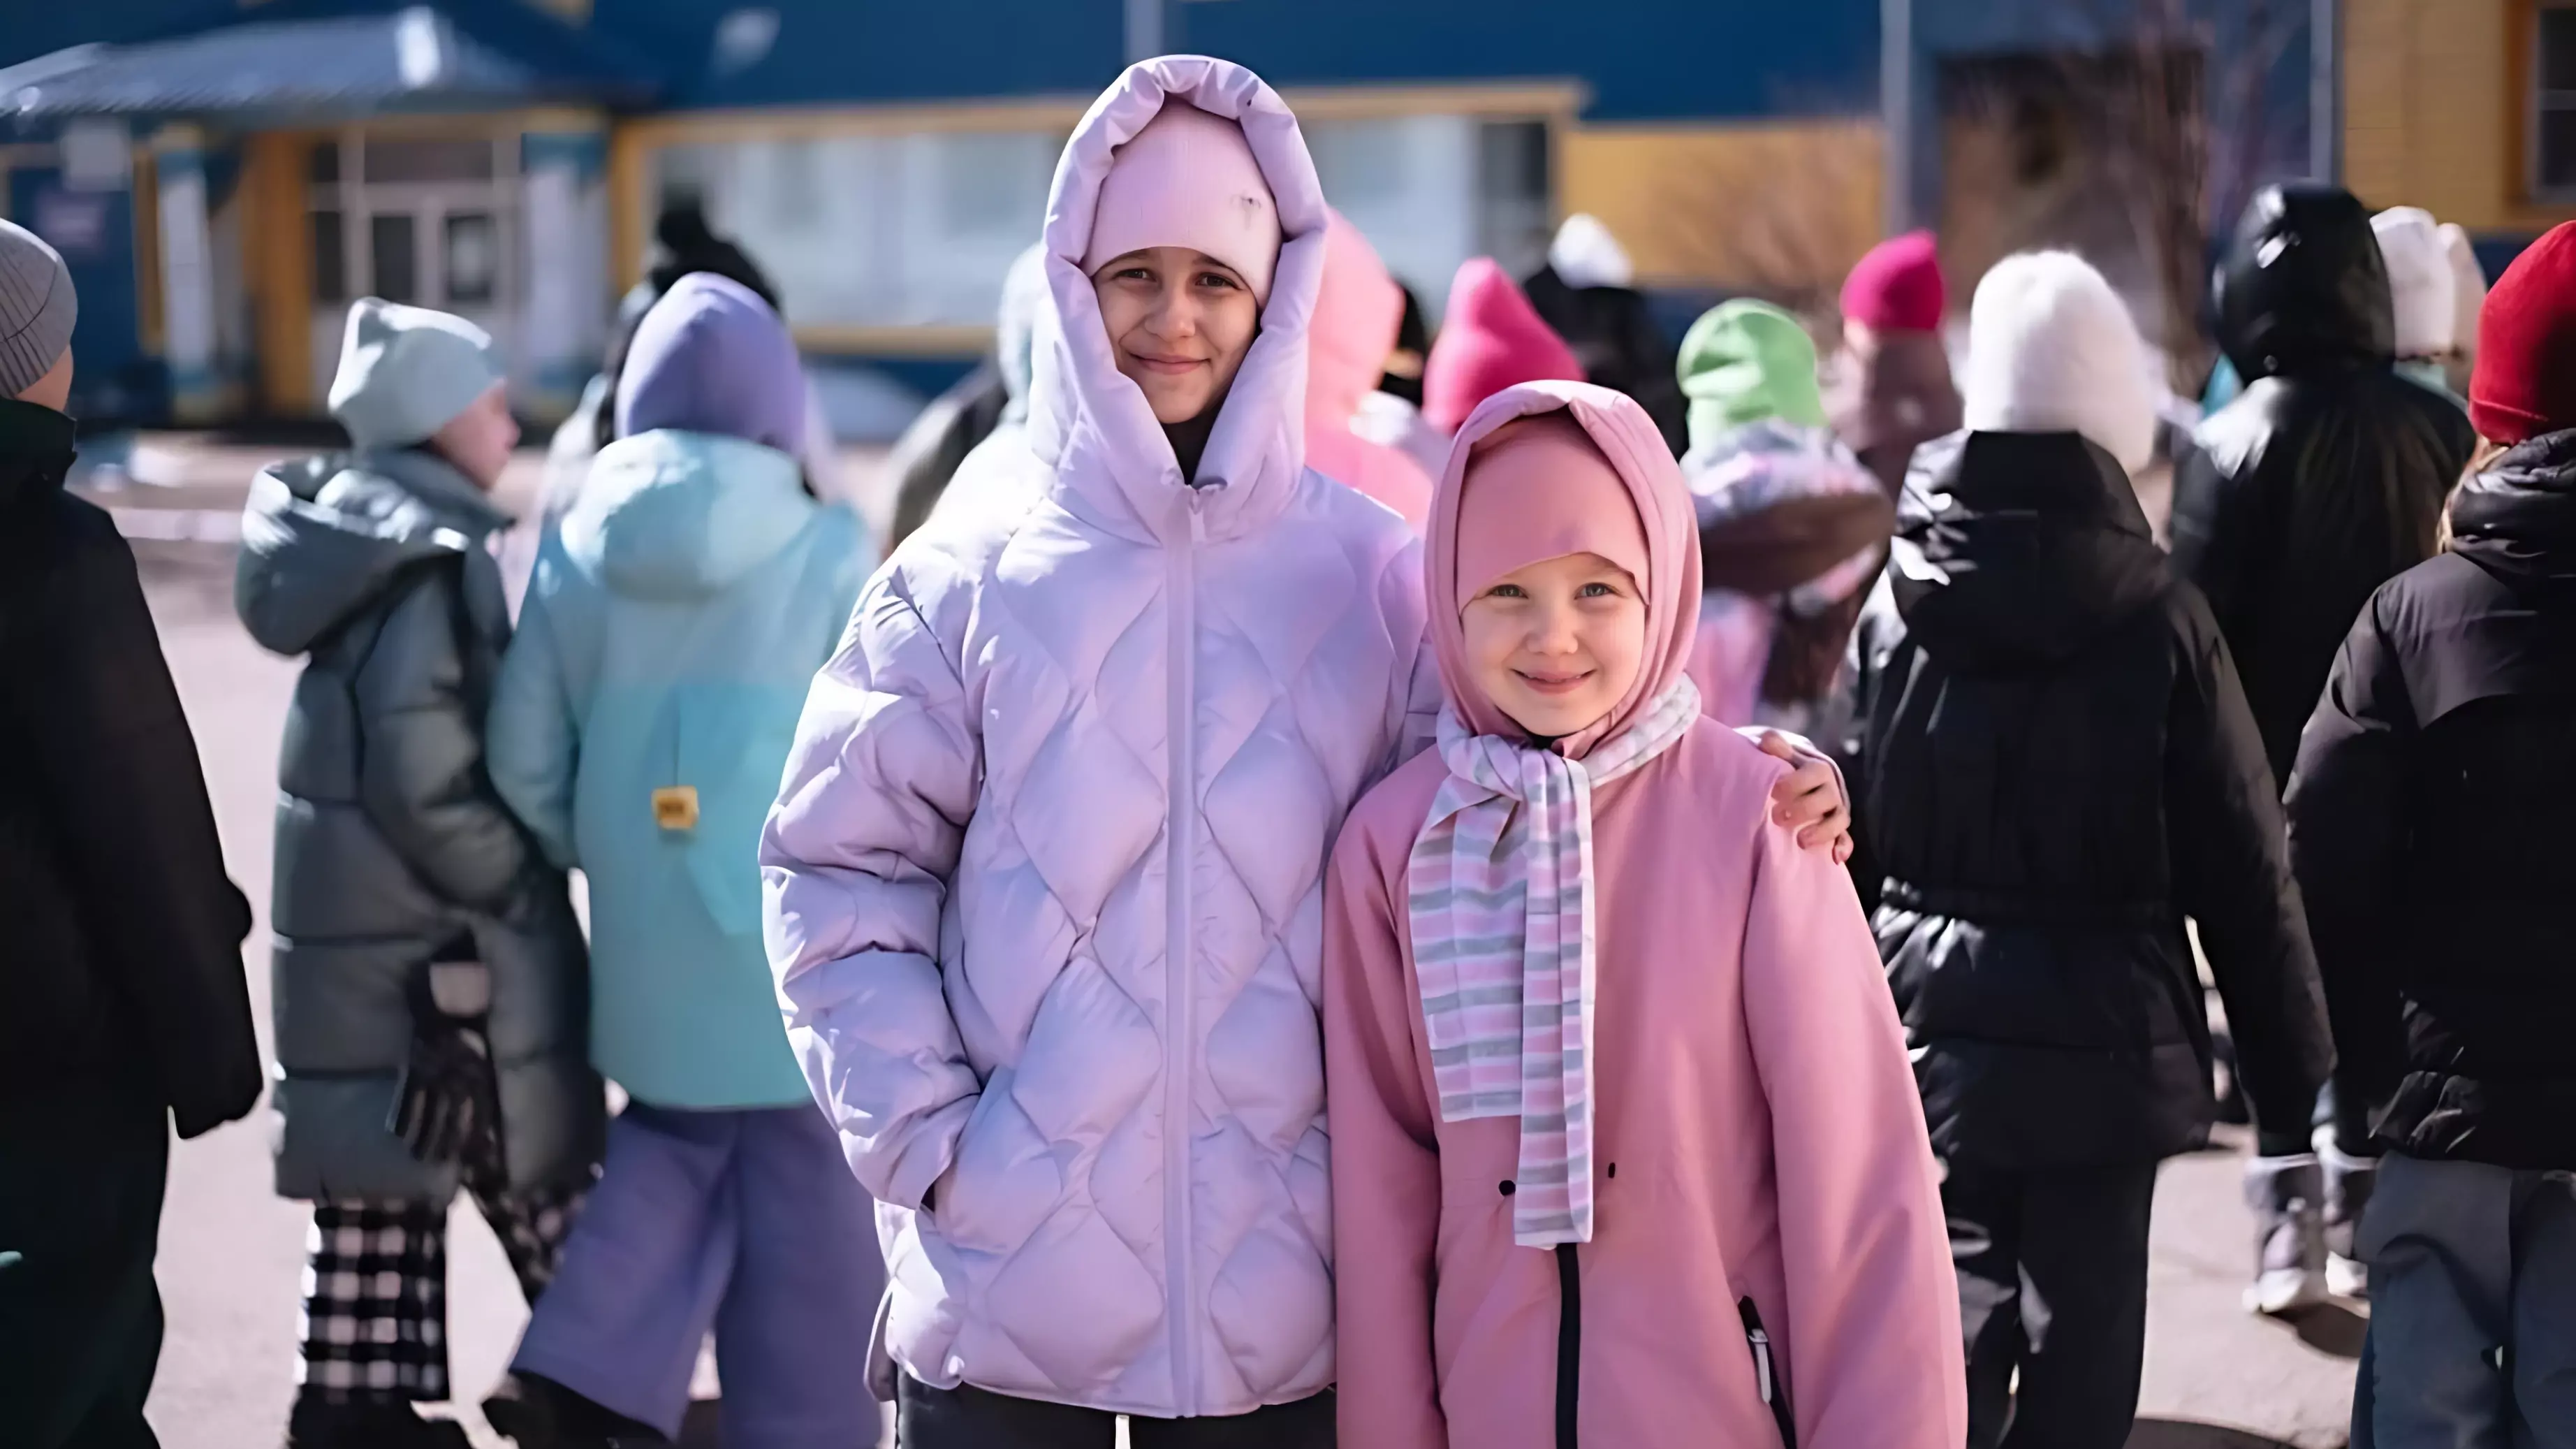 С пользой проводят каникулы школьники в Хабаровском крае